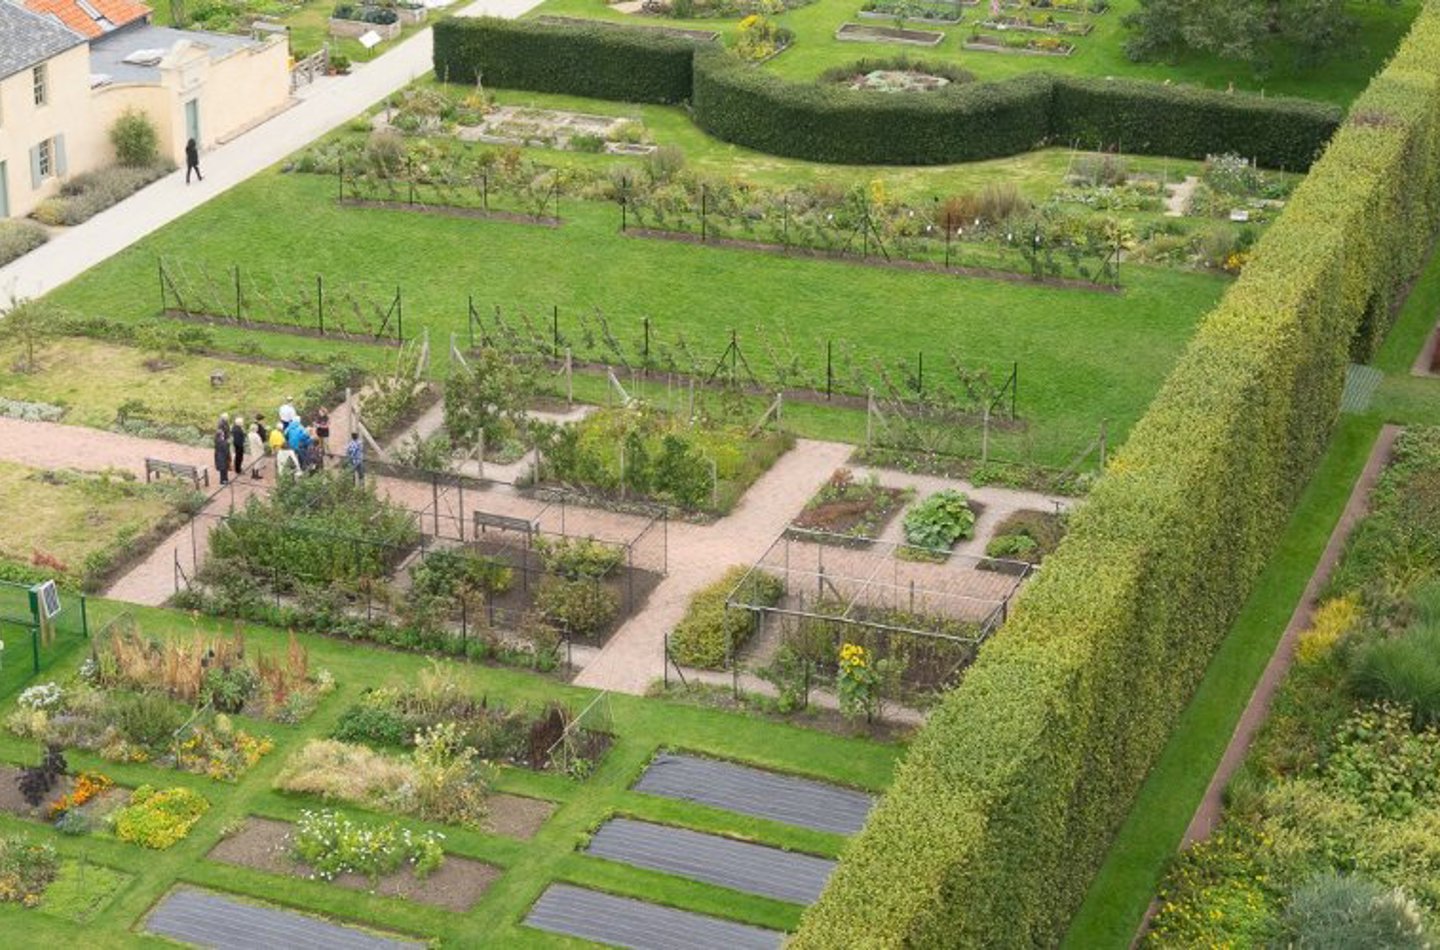 aerial view of the Edible Garden